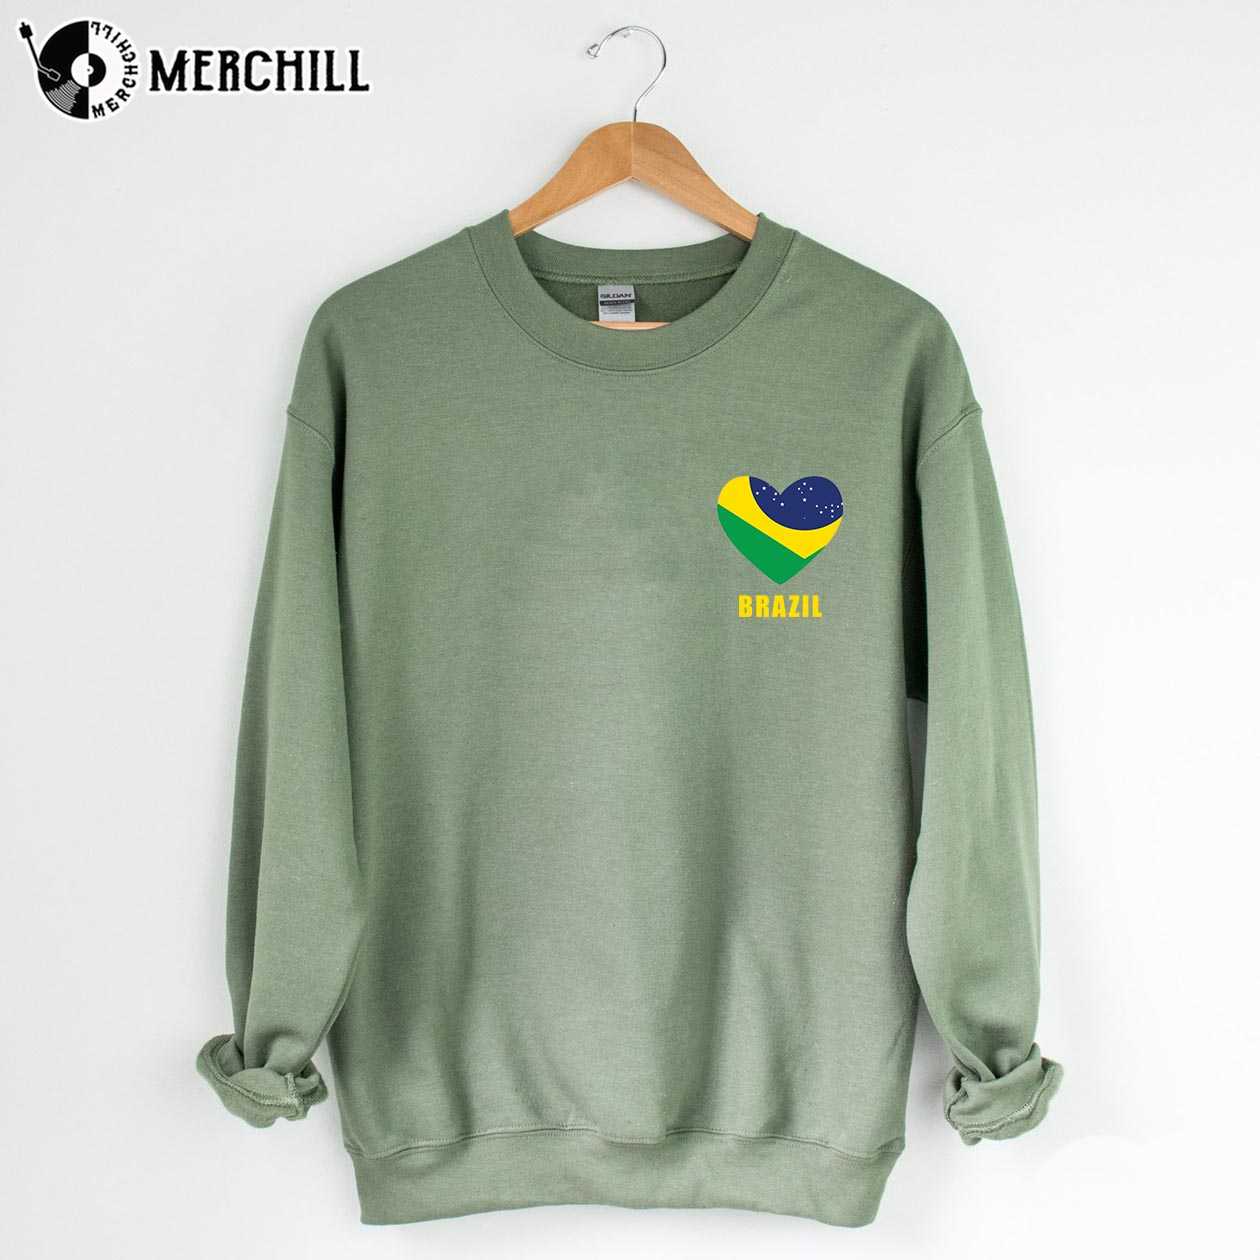 https://images.merchill.com/wp-content/uploads/2022/11/Heart-Shape-Brazil-Flag-Shirt-Brasil-Gift-Ideas-3.jpg